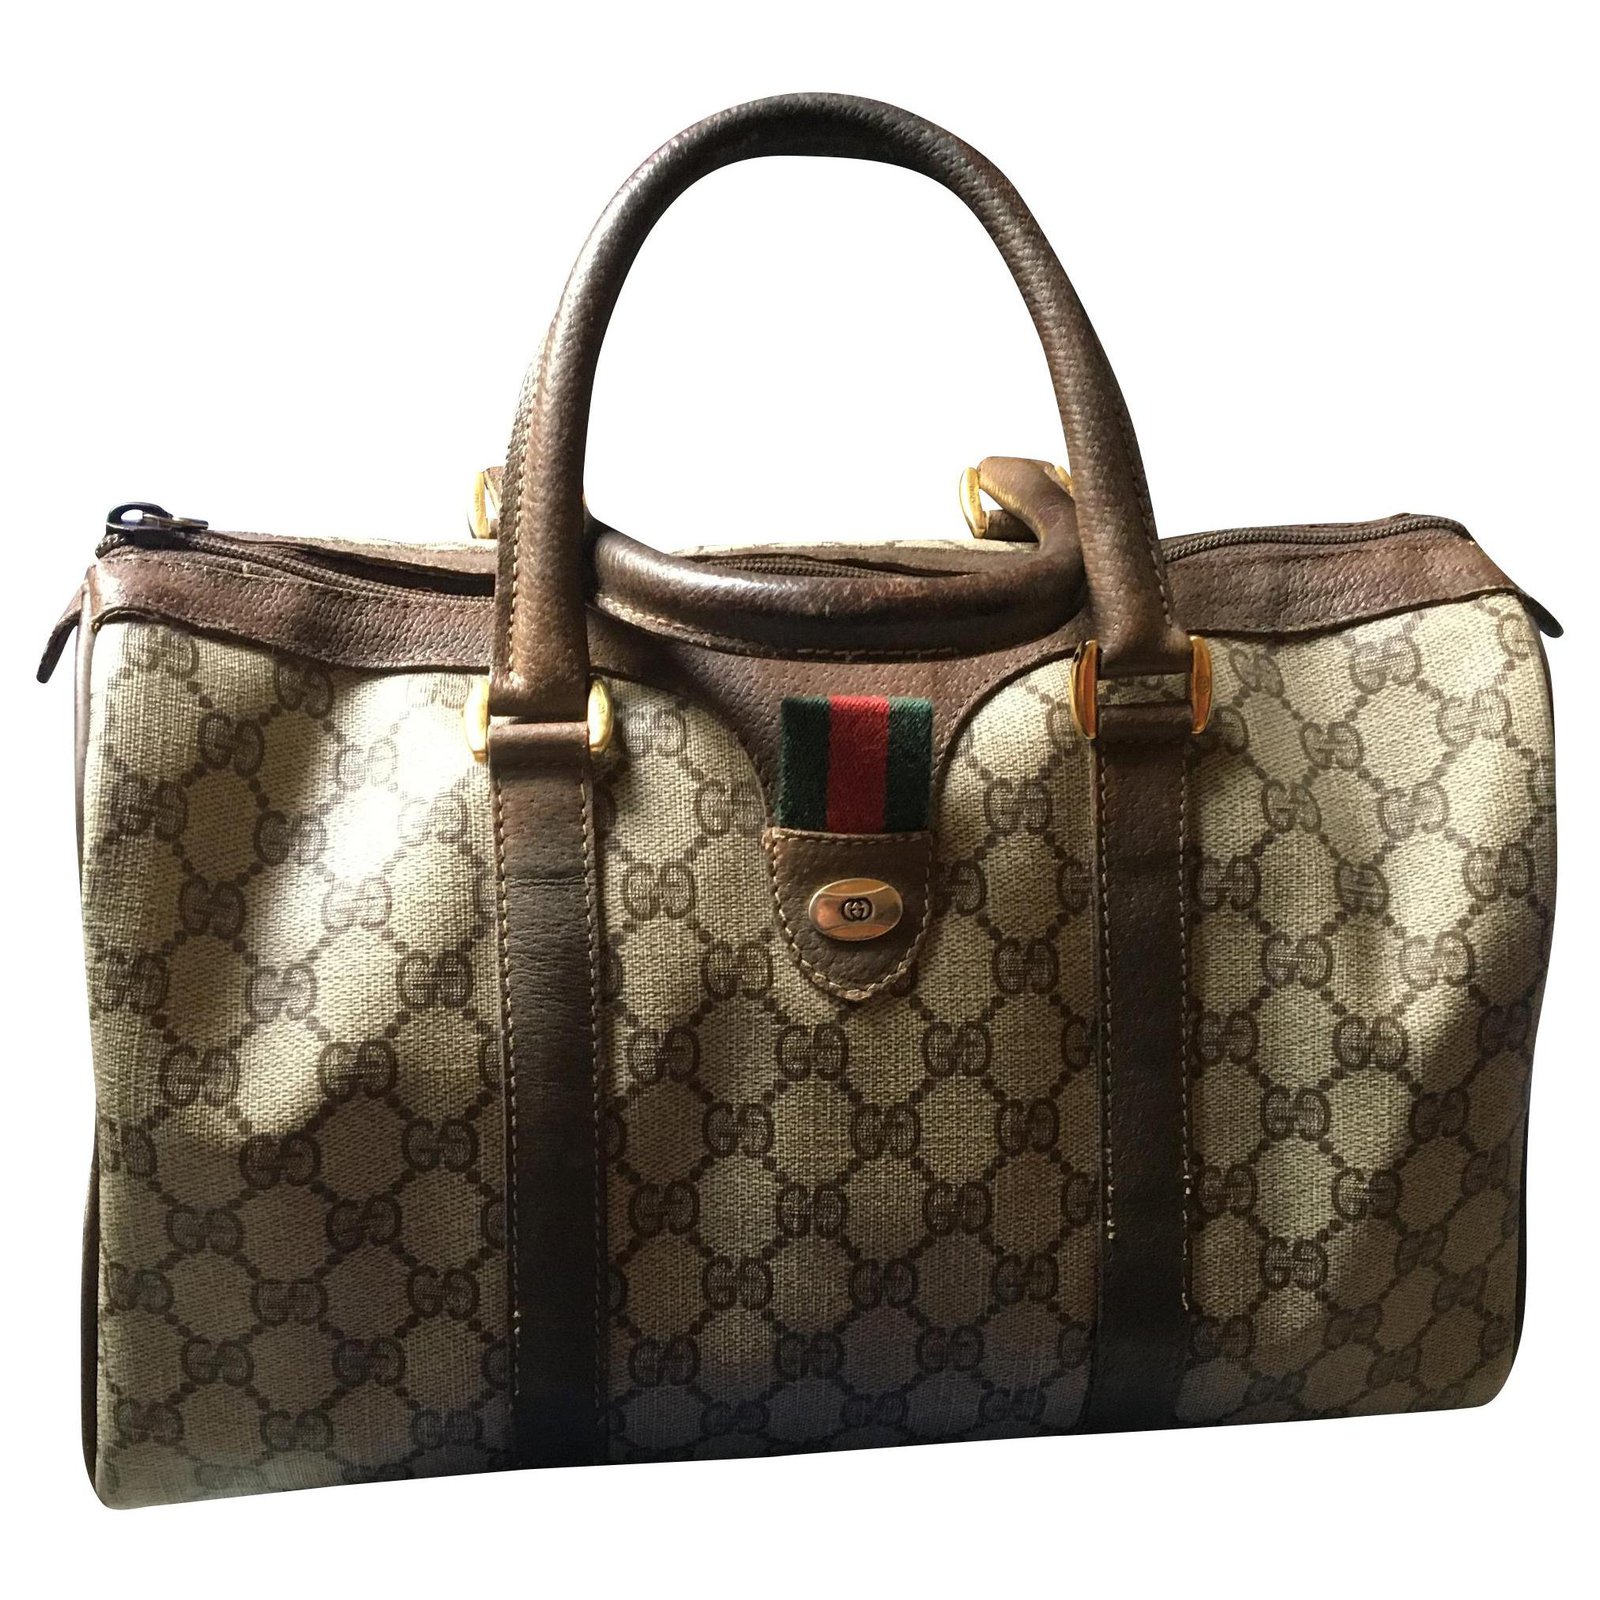 Gucci very vintage speedy bag Handbags 